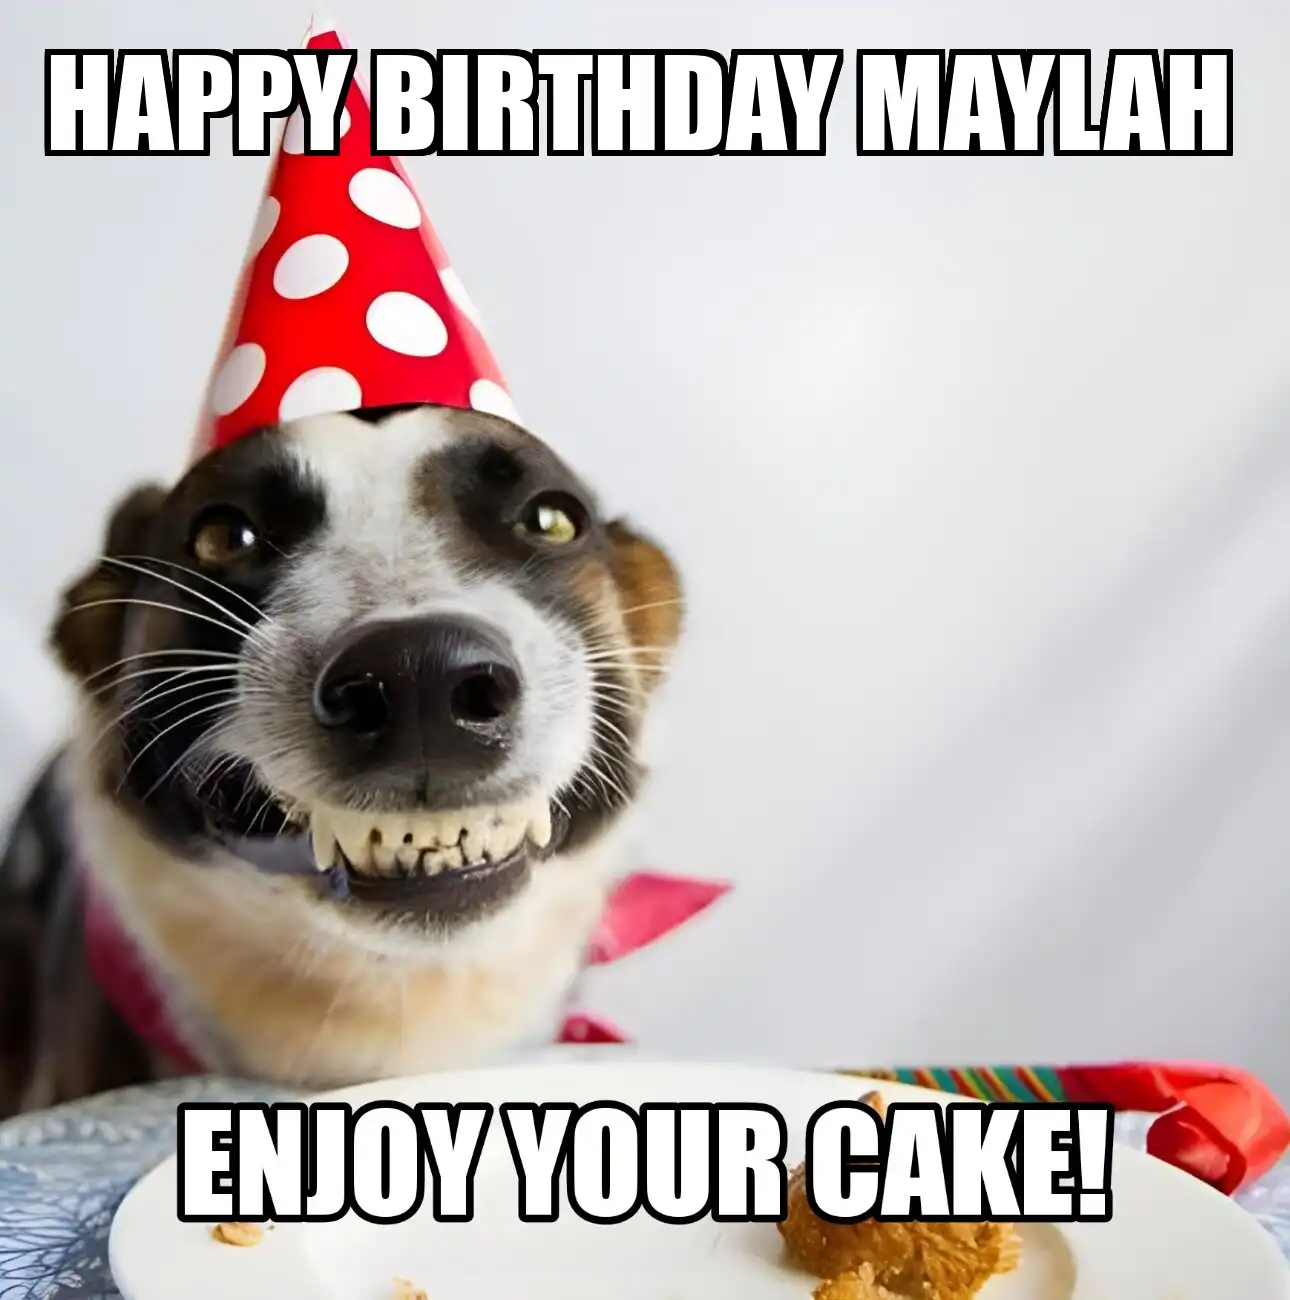 Happy Birthday Maylah Enjoy Your Cake Dog Meme